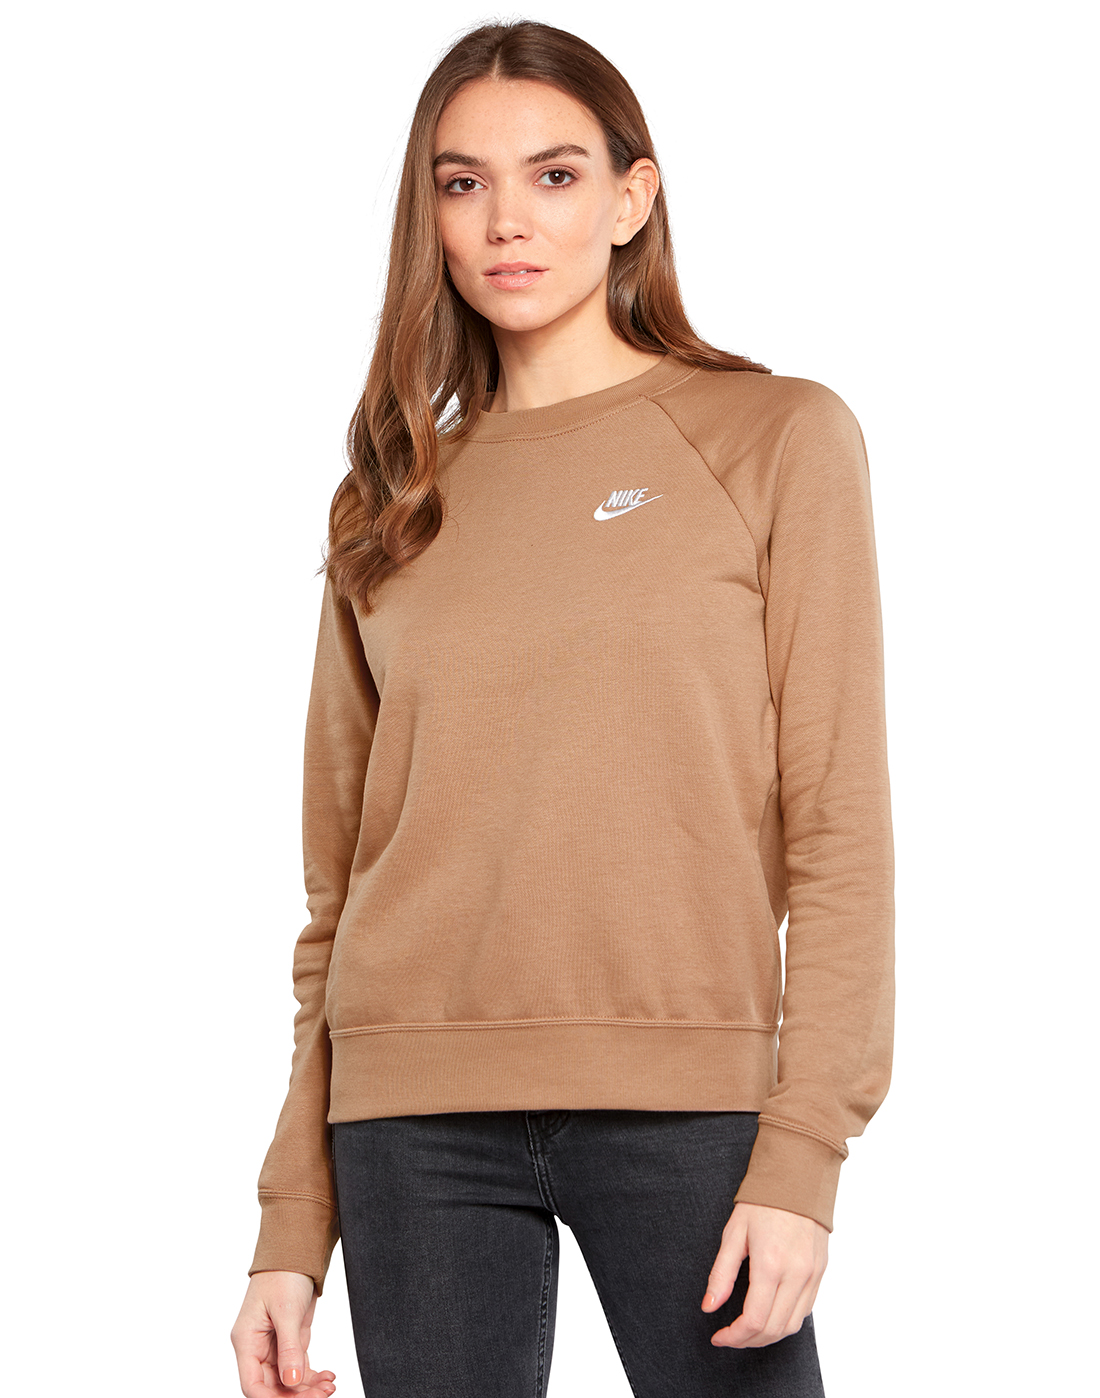 Nike Womens Fleece Crewneck Sweatshirt - Brown | Life Style Sports UK